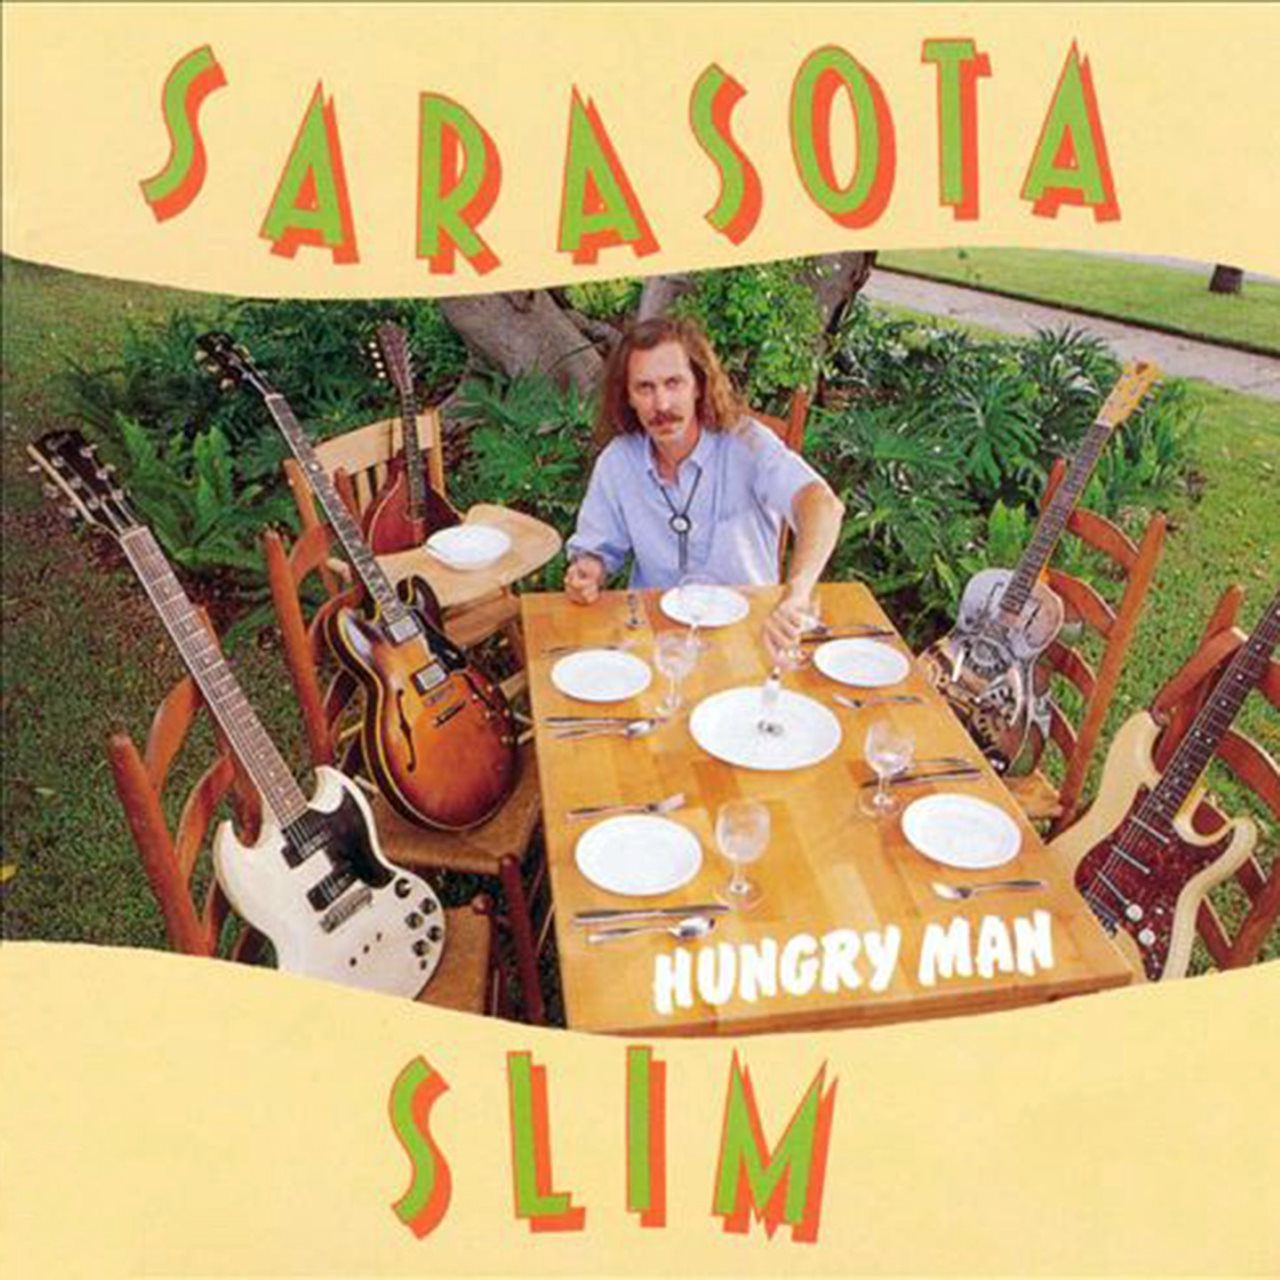 Sarasota Slim – Hungry Man cover album